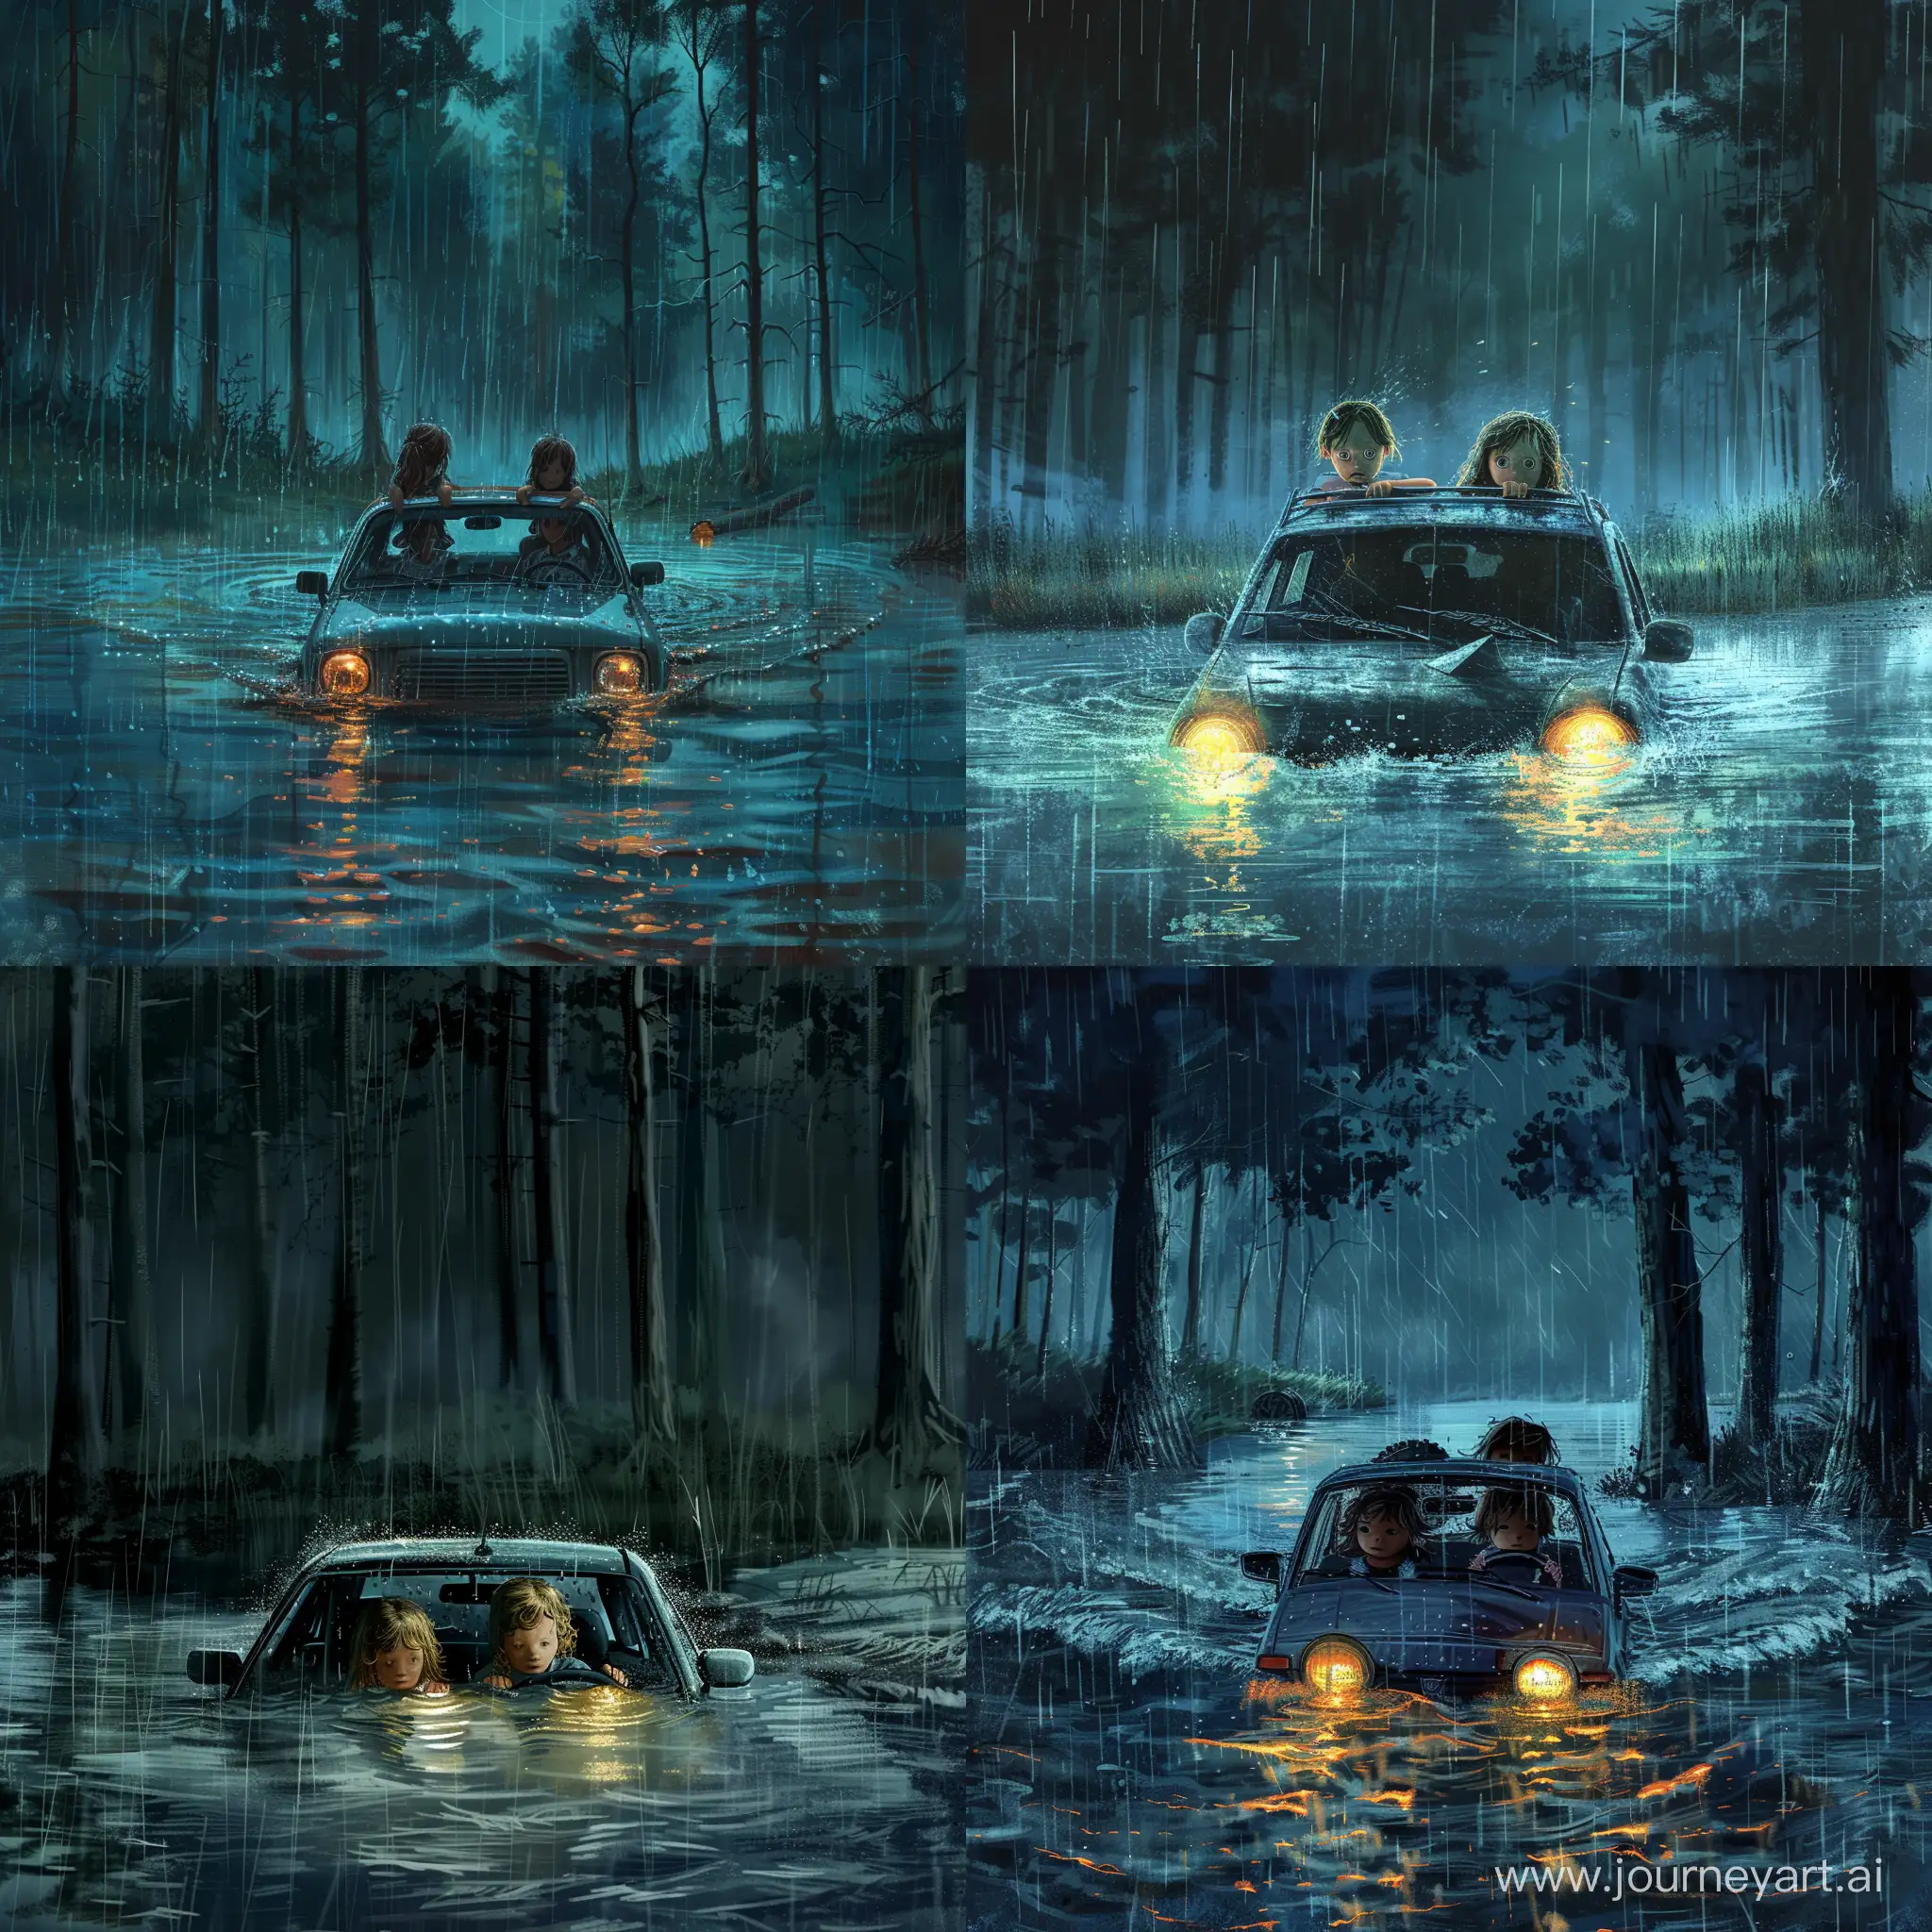 Ночь , сильный дождь . Озеро в лесу . Две маленькие девочки за рулем машины укатились с берега в озеро и машина почти затоплена . Видно крышу , фары не горят уже под водой